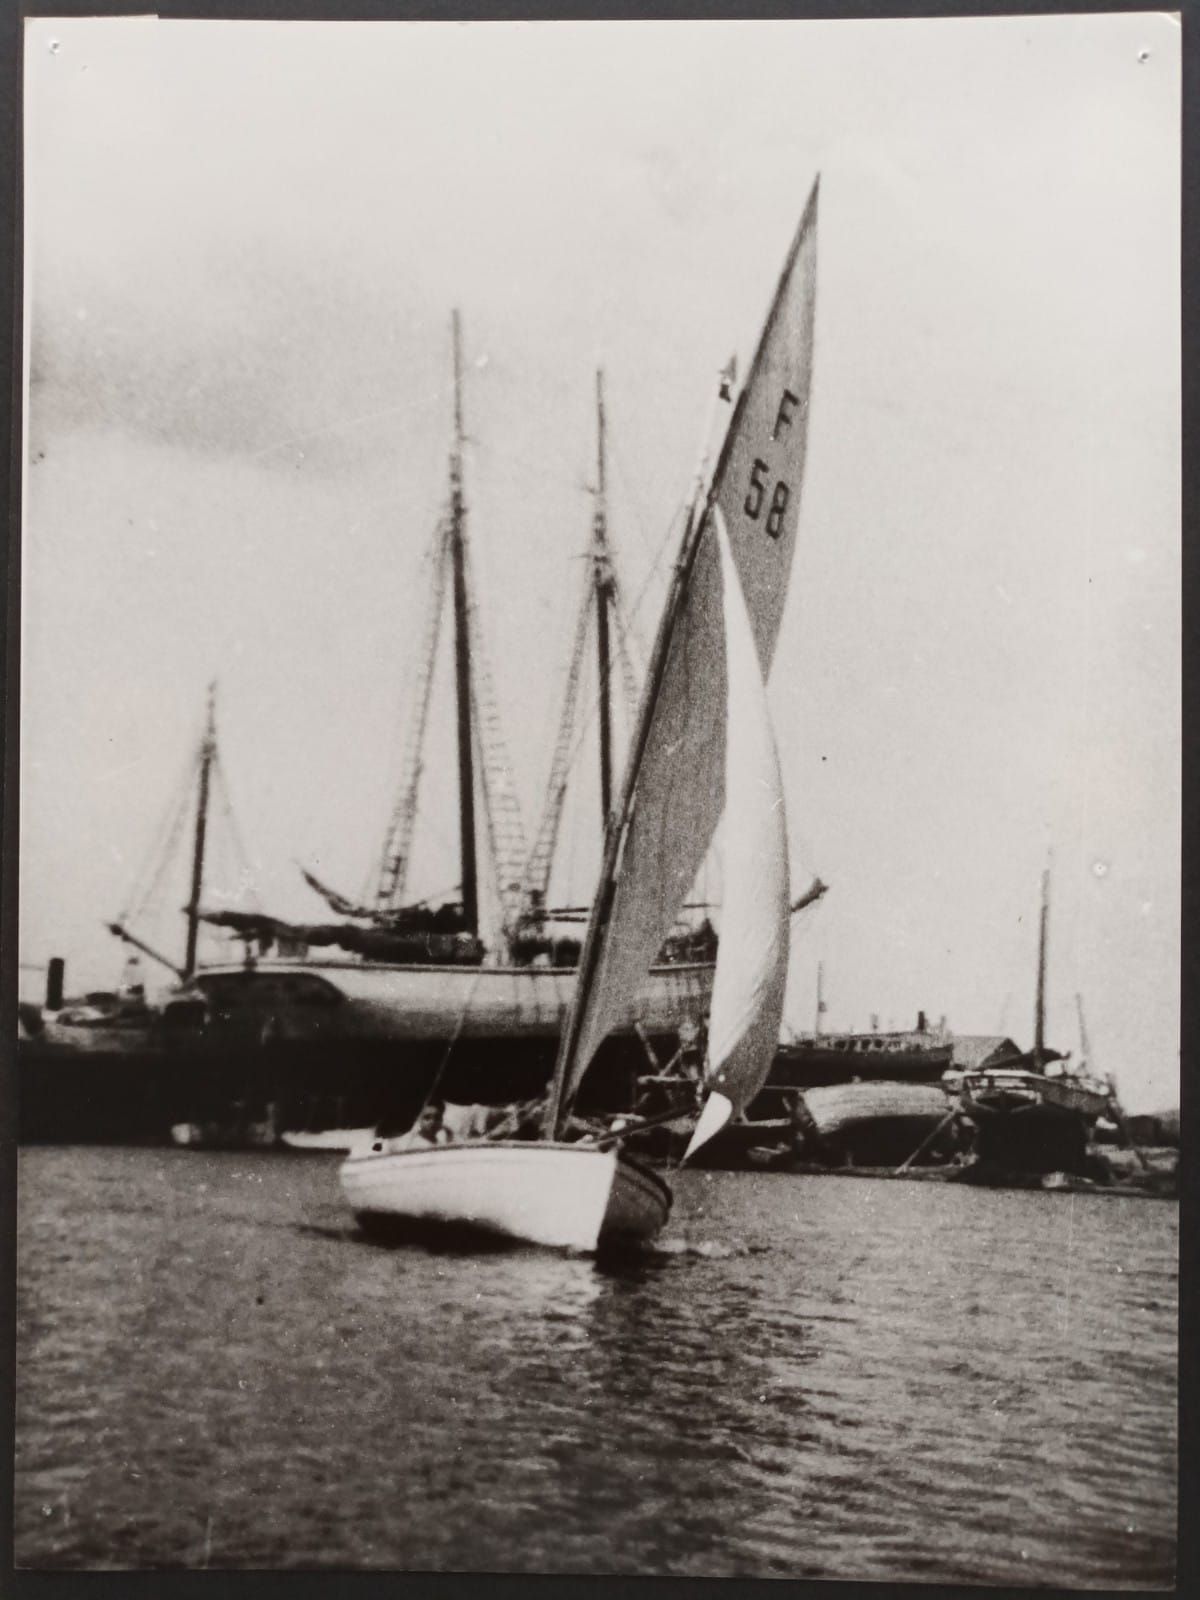 Imagen tomada en los años 30 de una embarcación.